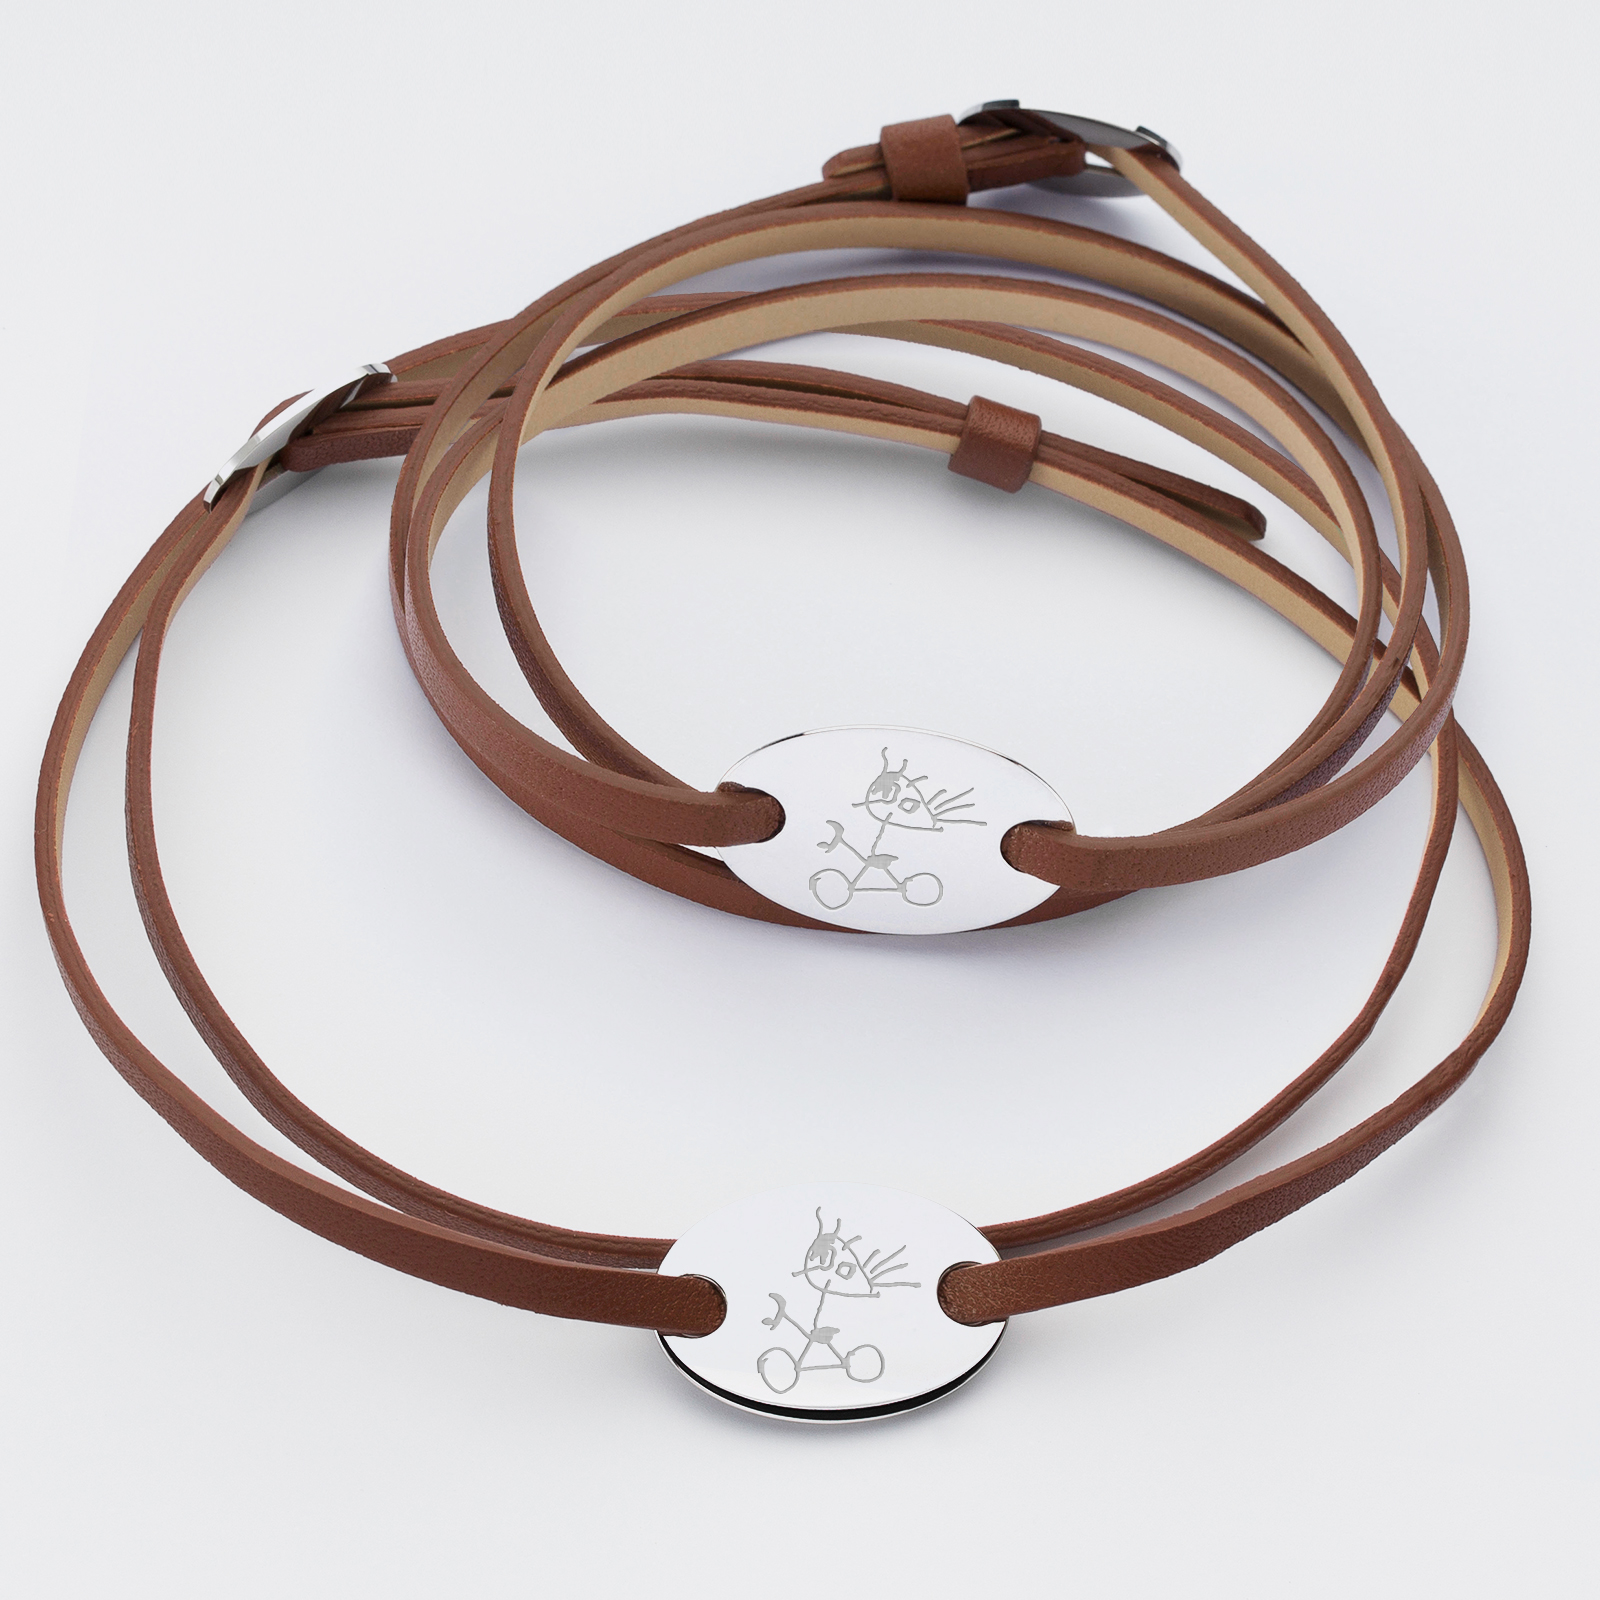 Duo de bracelets cuir personnalisés médailles gravée argent ovale 2 trous 25x16 mm - dessins